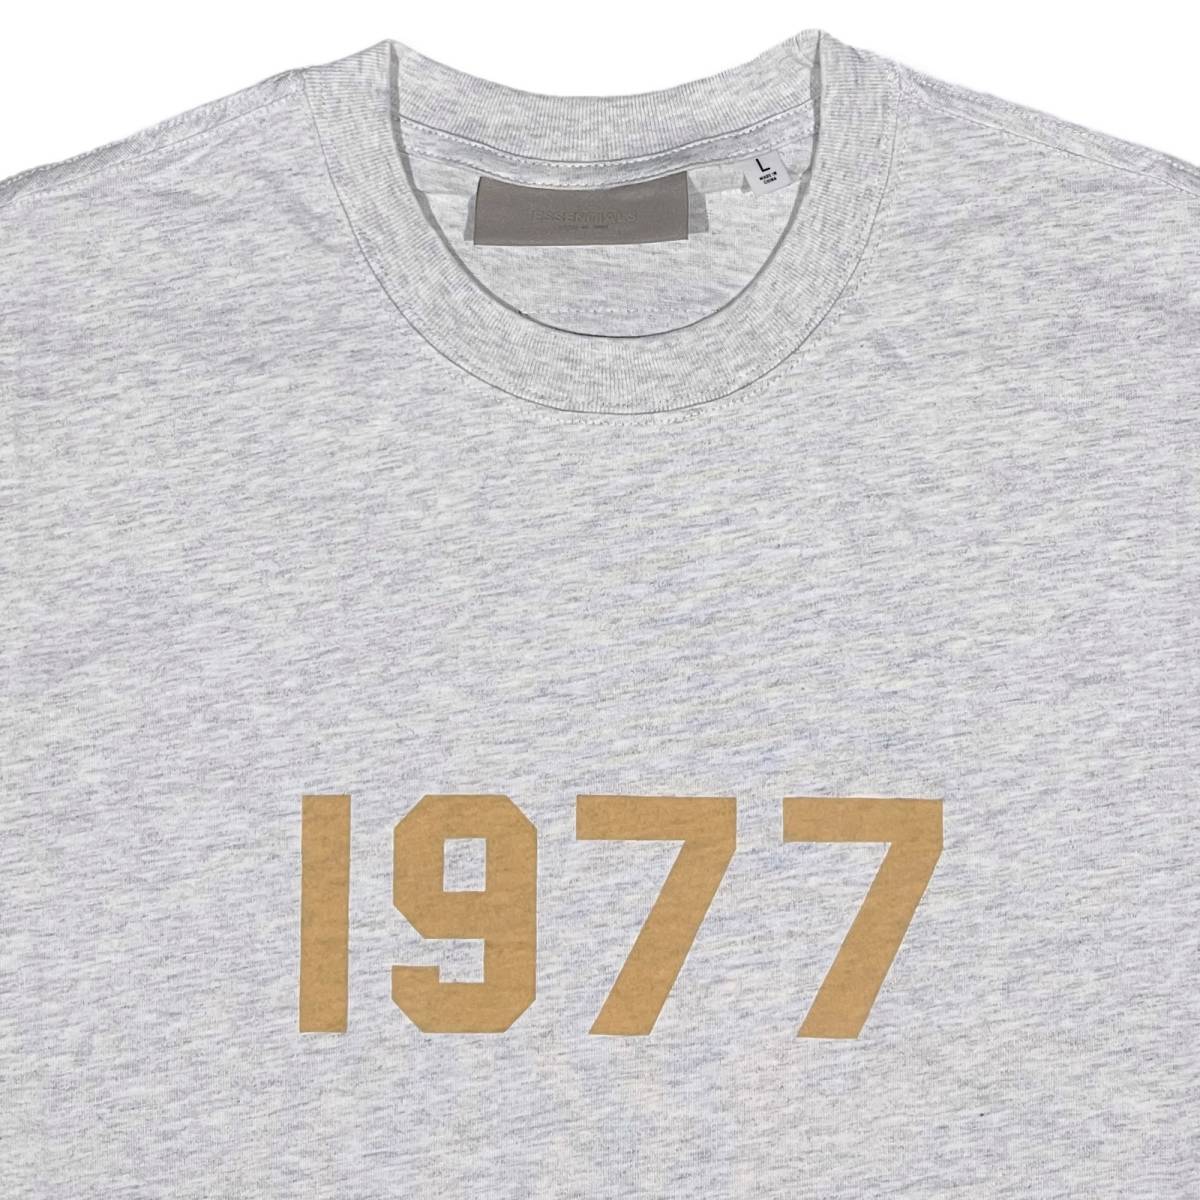 [並行輸入品] FEAR OF GOD FOG ESSETIALS エッセンシャルズ 1977ロゴ 半袖 Tシャツ (ライトグレー) (M)